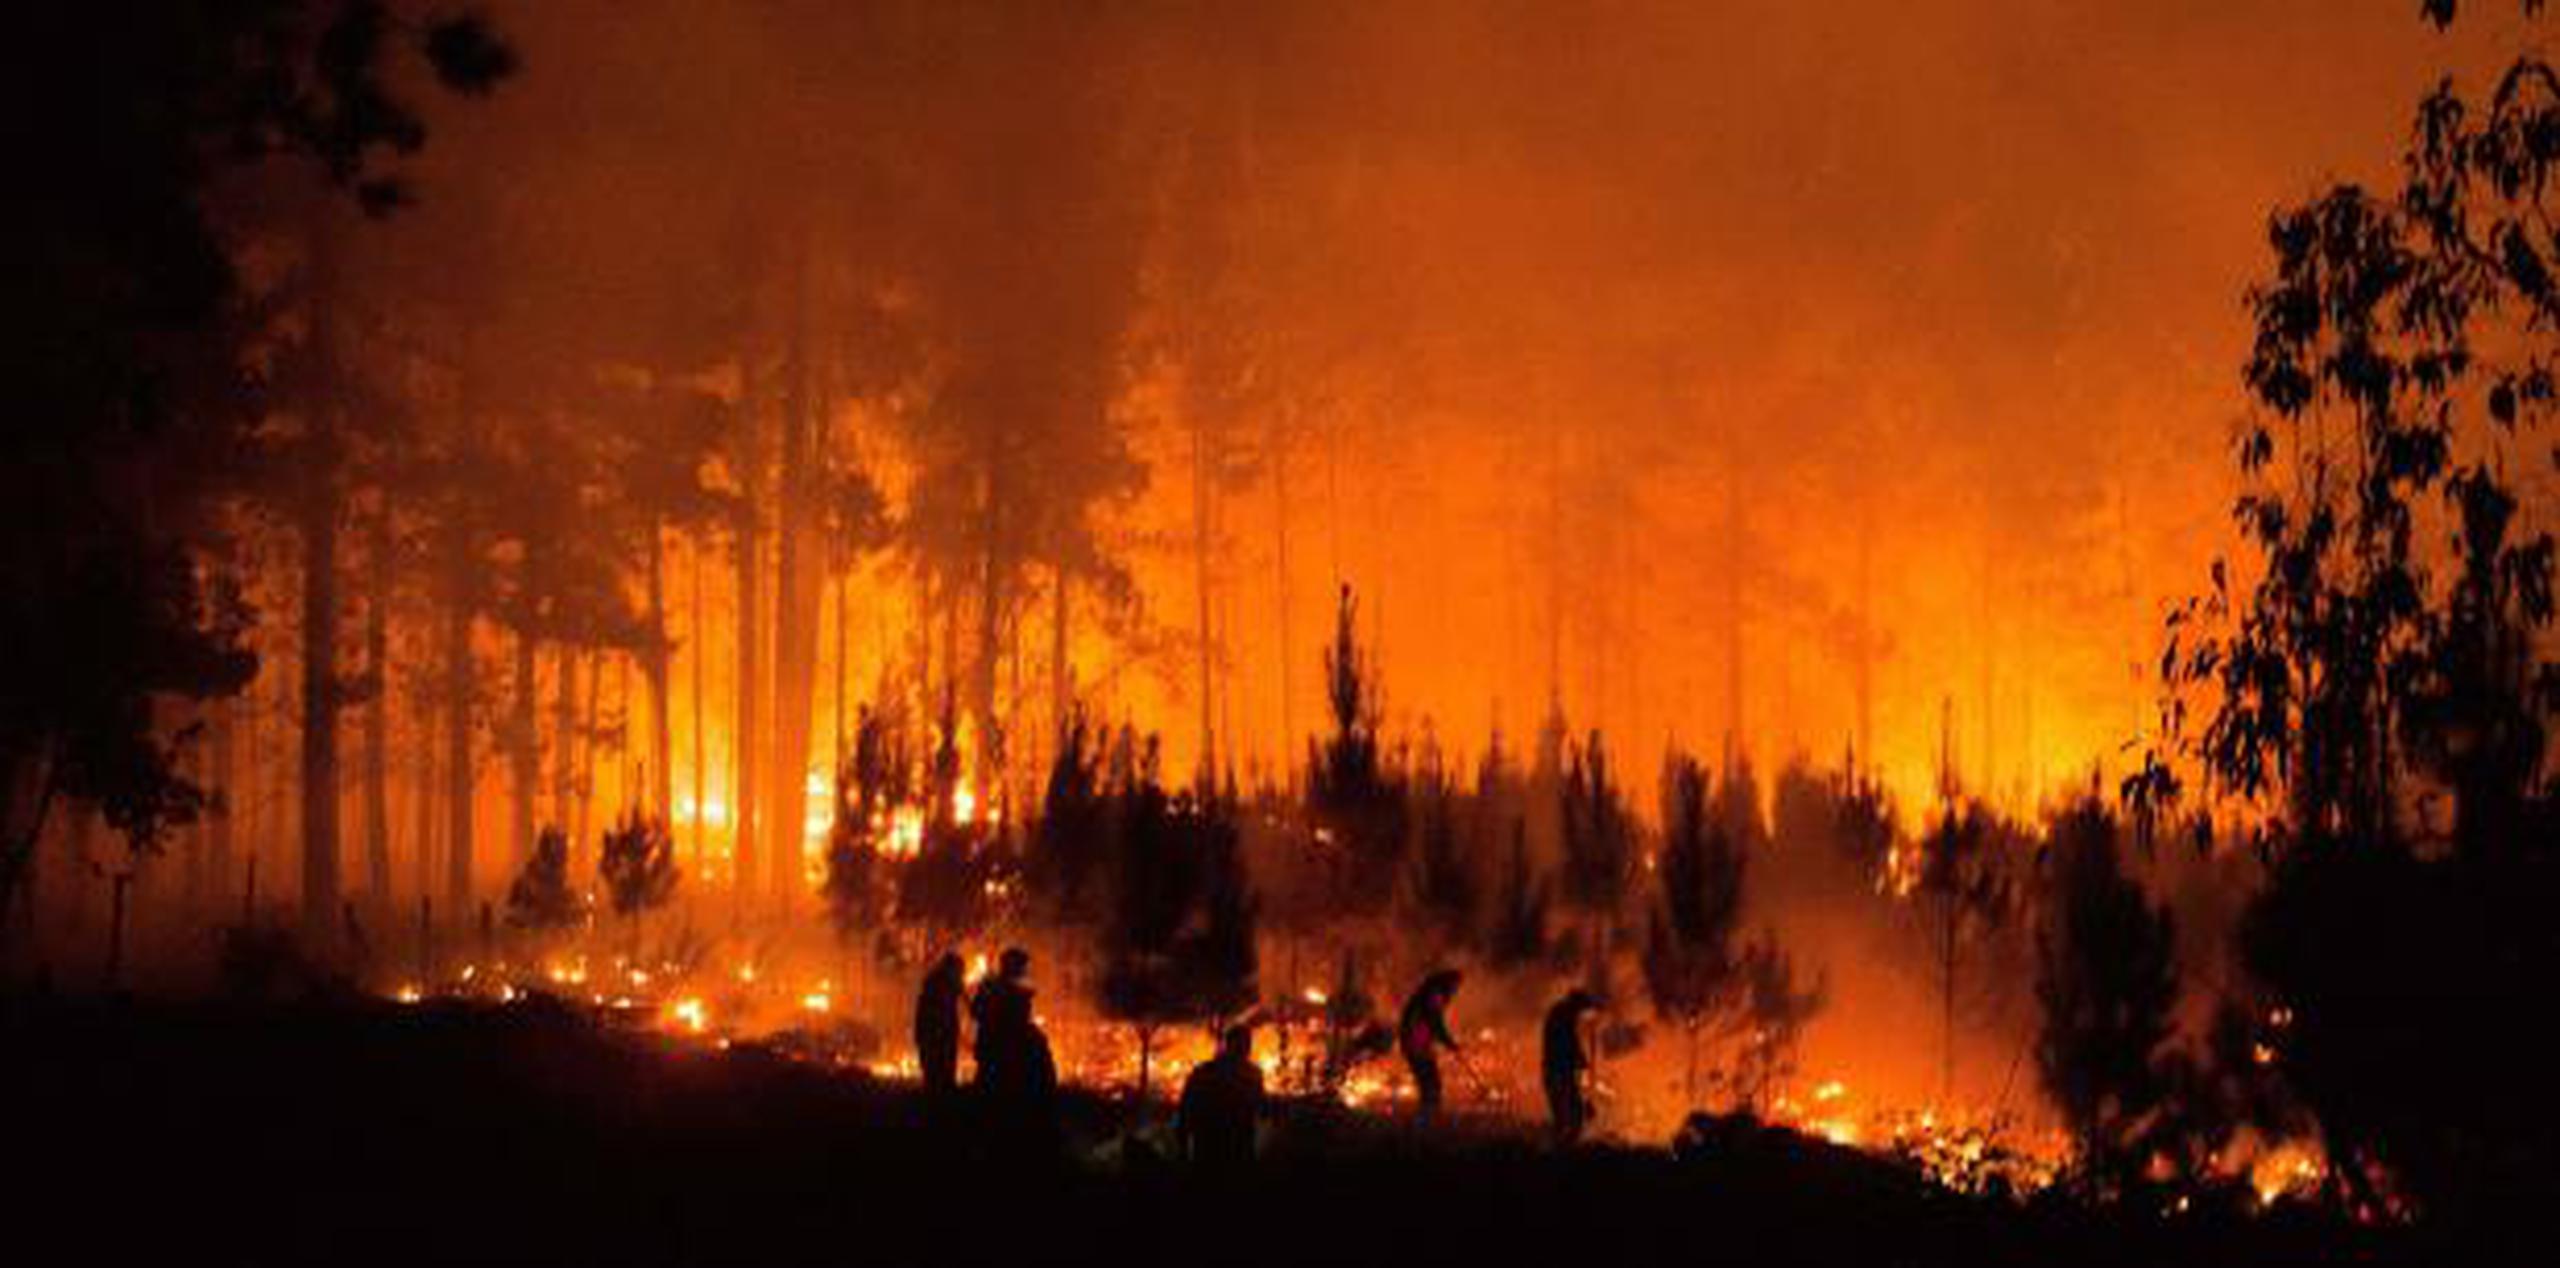 El alcalde de la comuna, Patricio Ulloa, hizo un llamado urgente para poder combatir los incendios forestales en la región. (EFE)